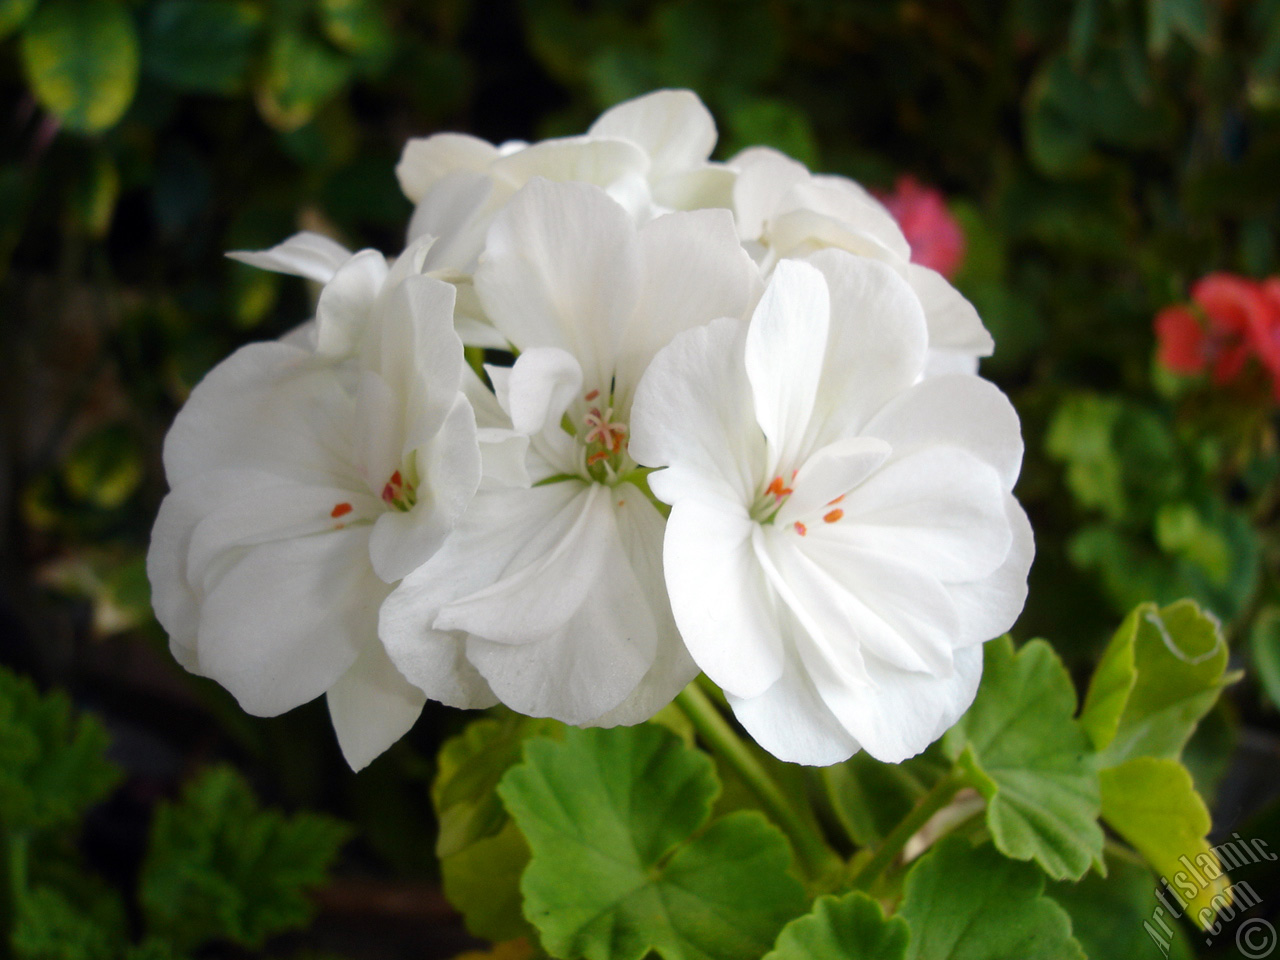 White color Pelargonia -Geranium- flower.
